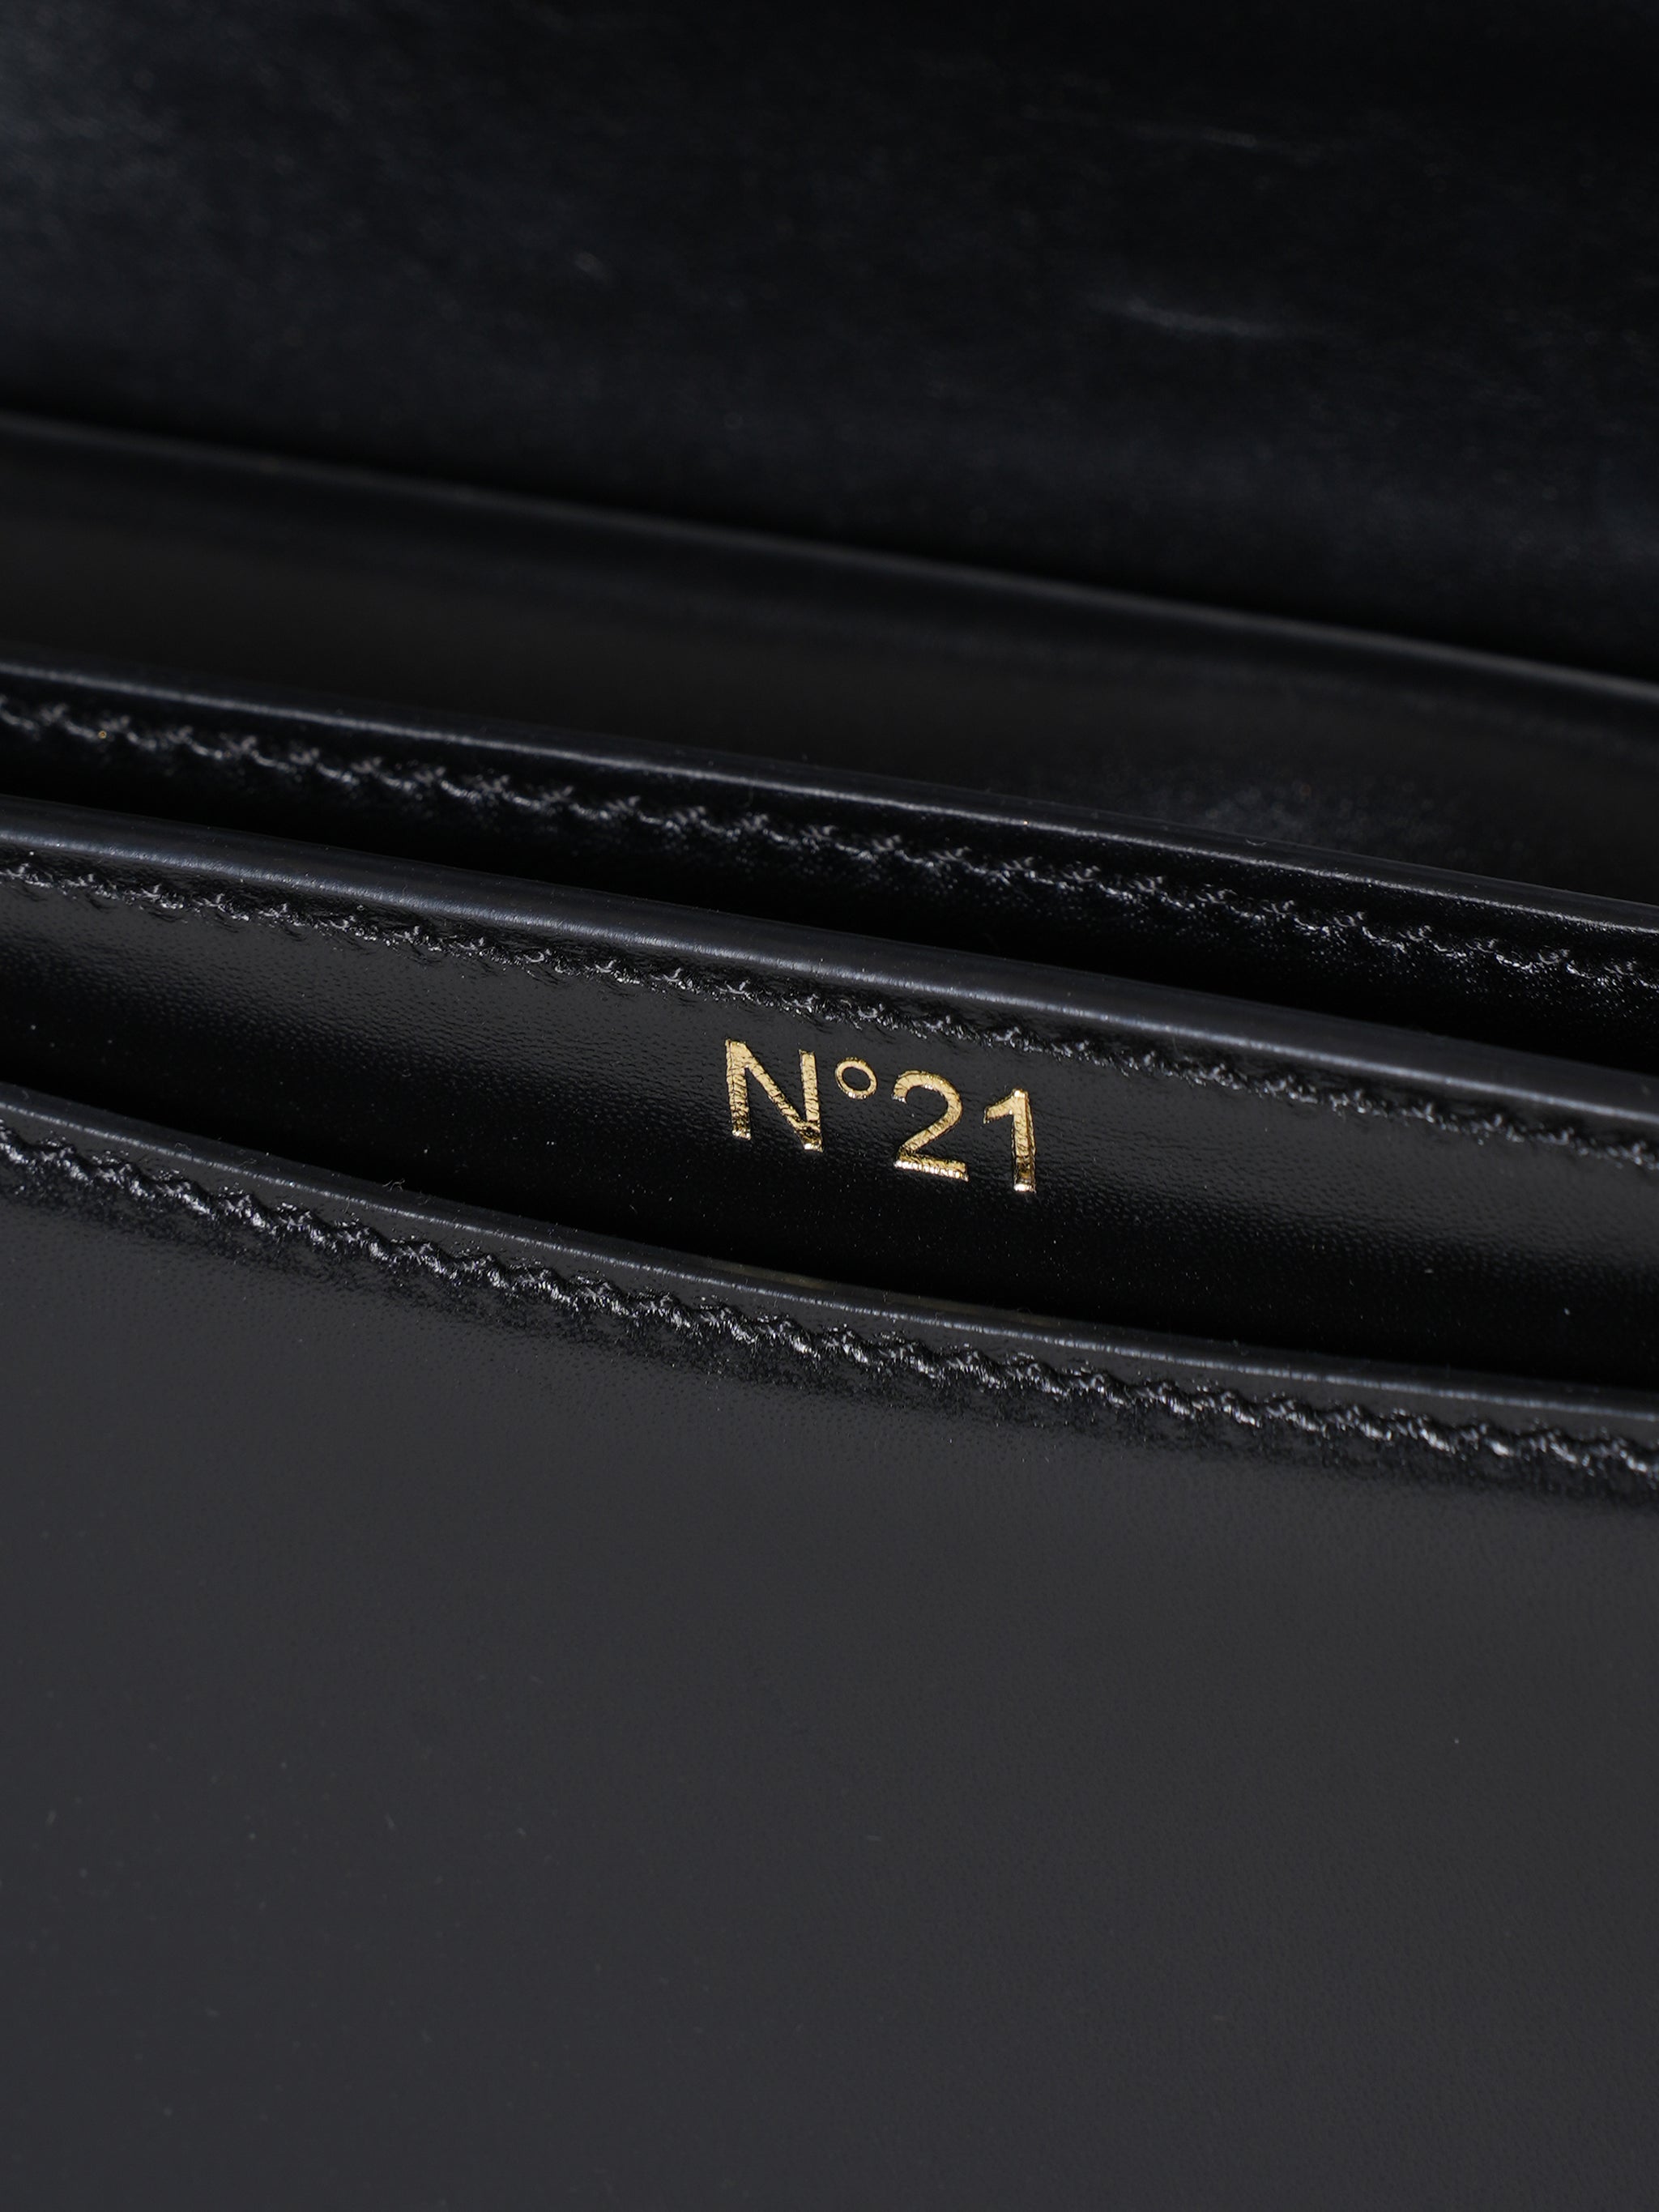 N°21 Black Leather Top Handle Alice Bag